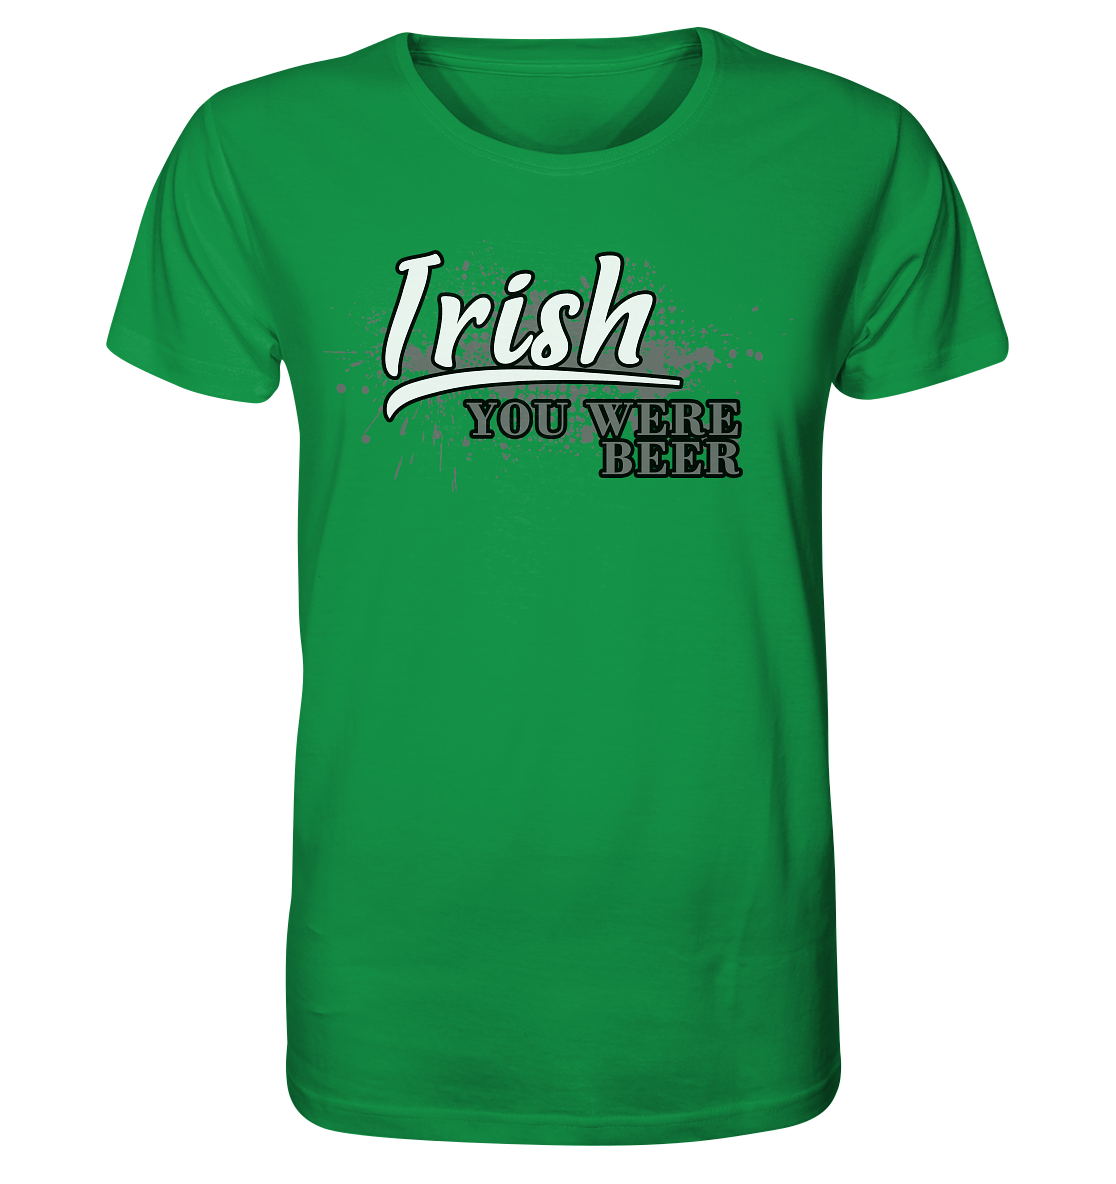 Irish "You Were Beer" - Organic Shirt